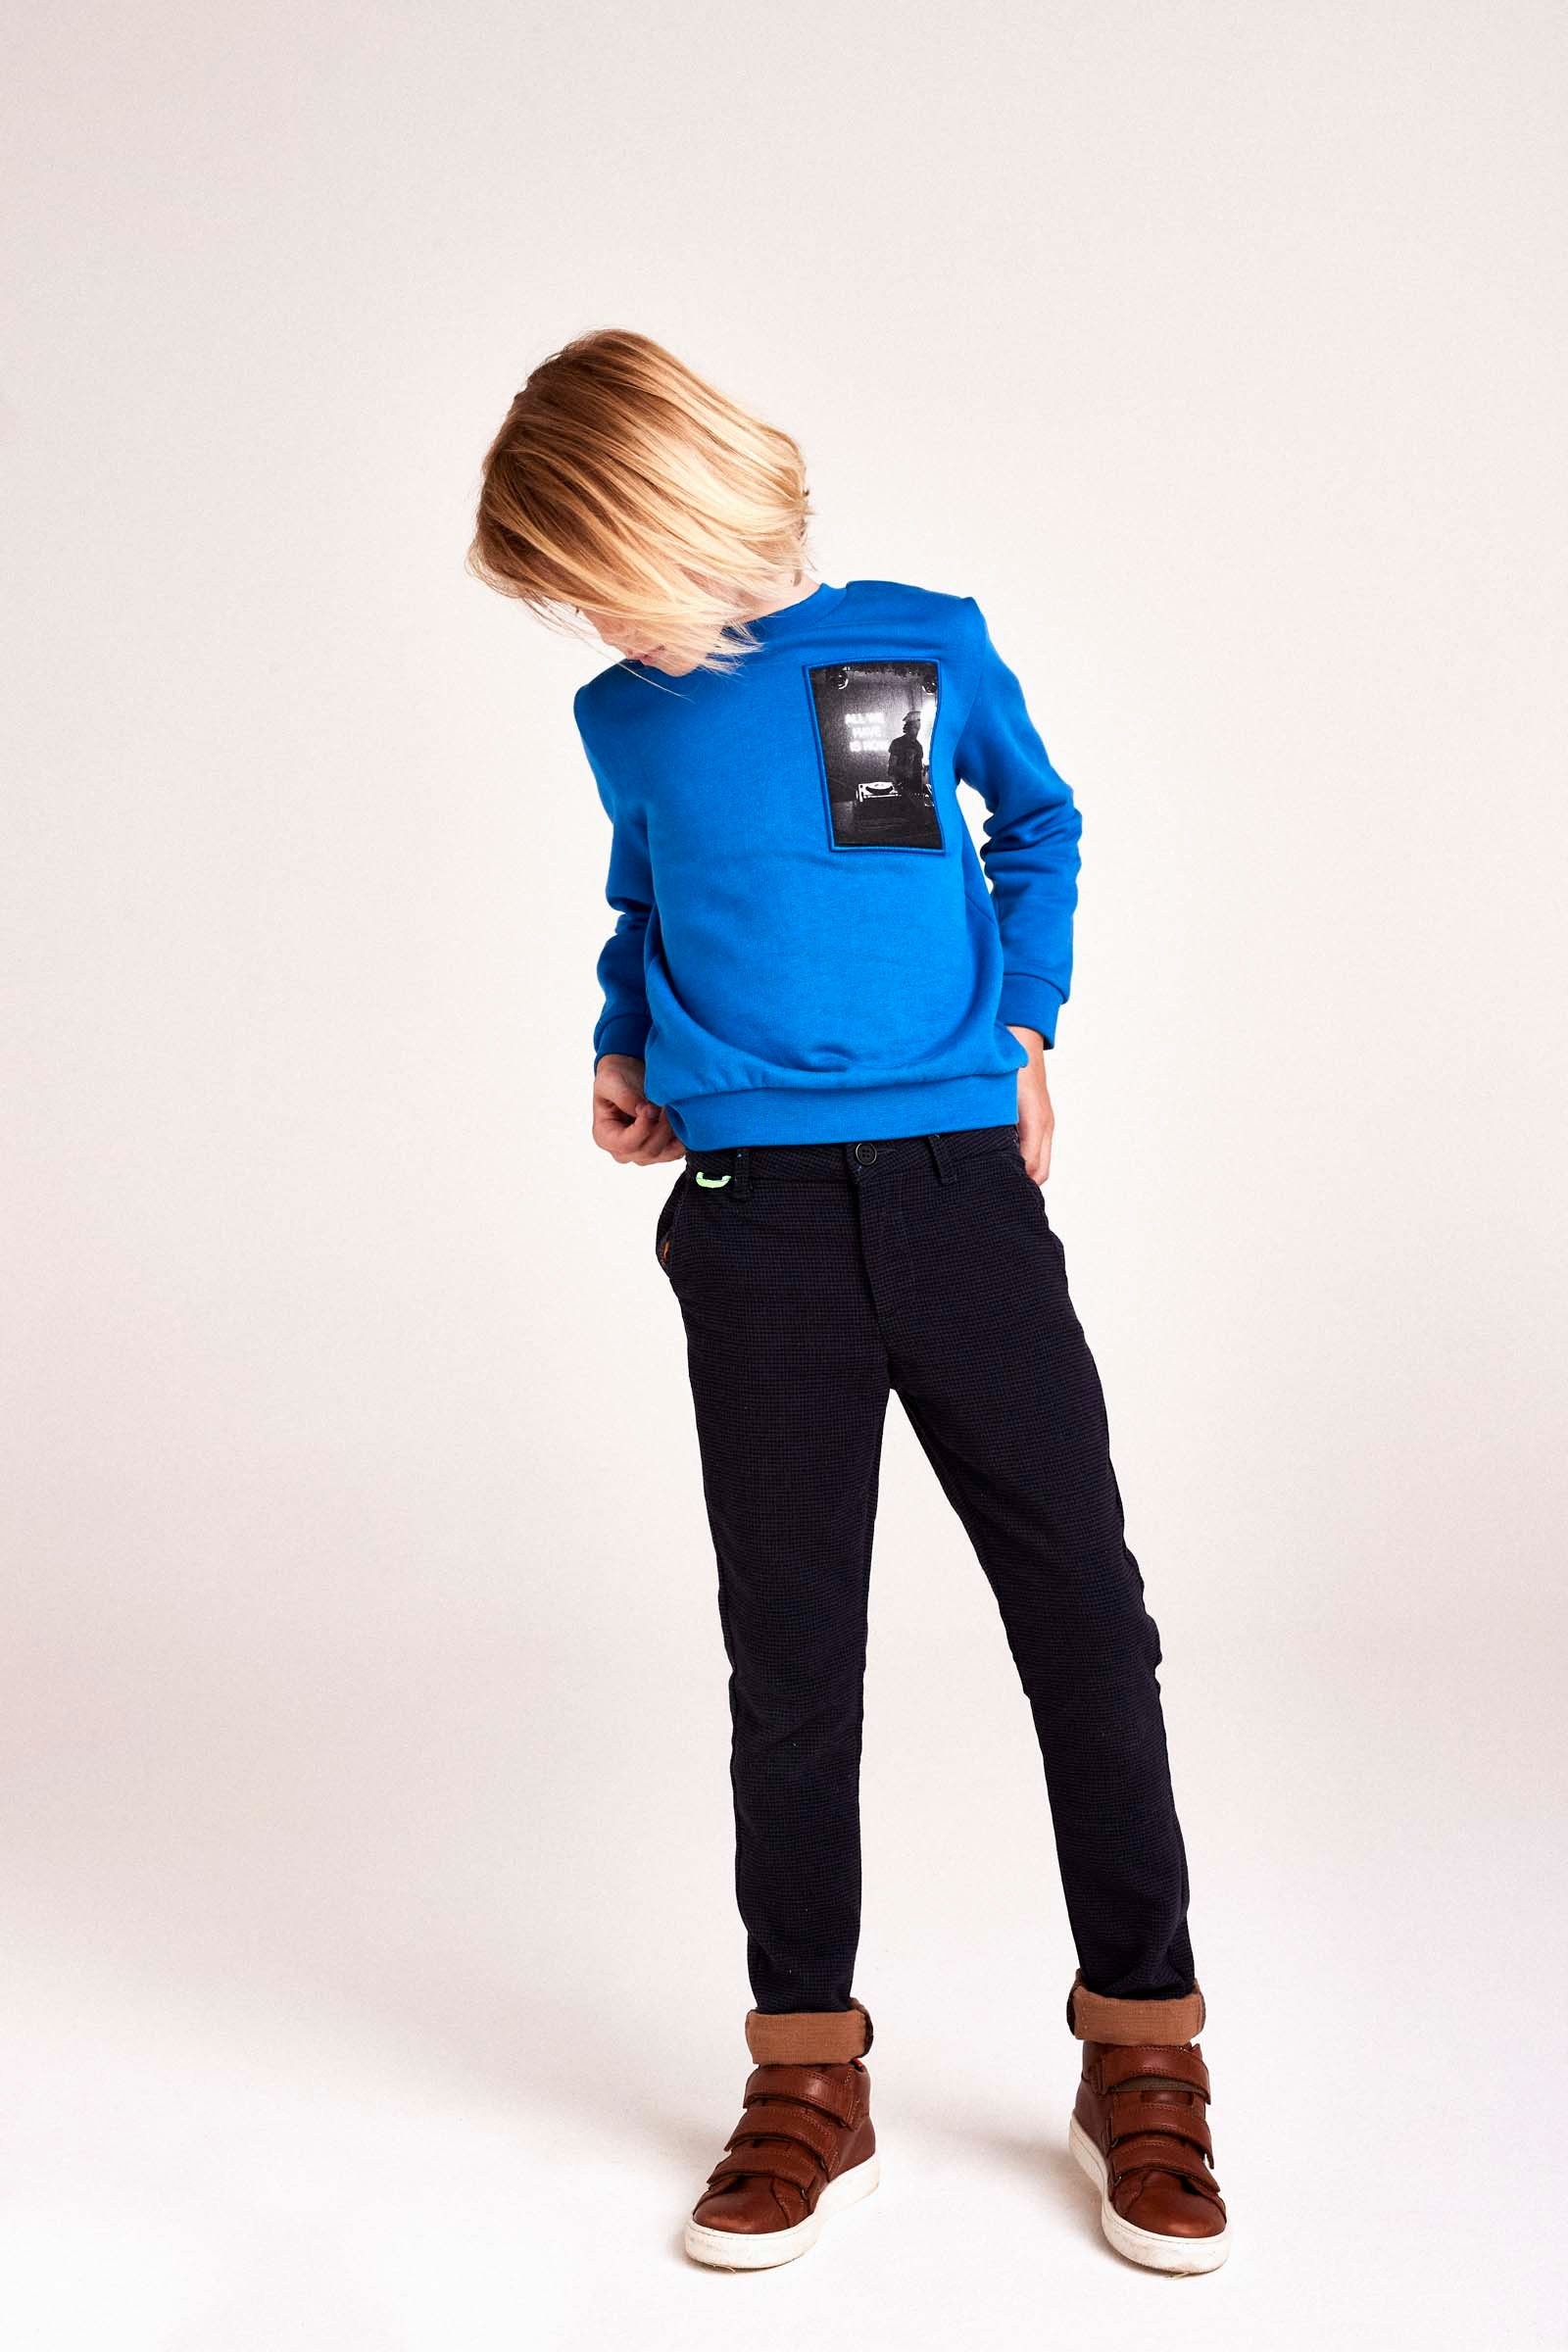 CKS Kids - BASSON - pantalon long - bleu foncé